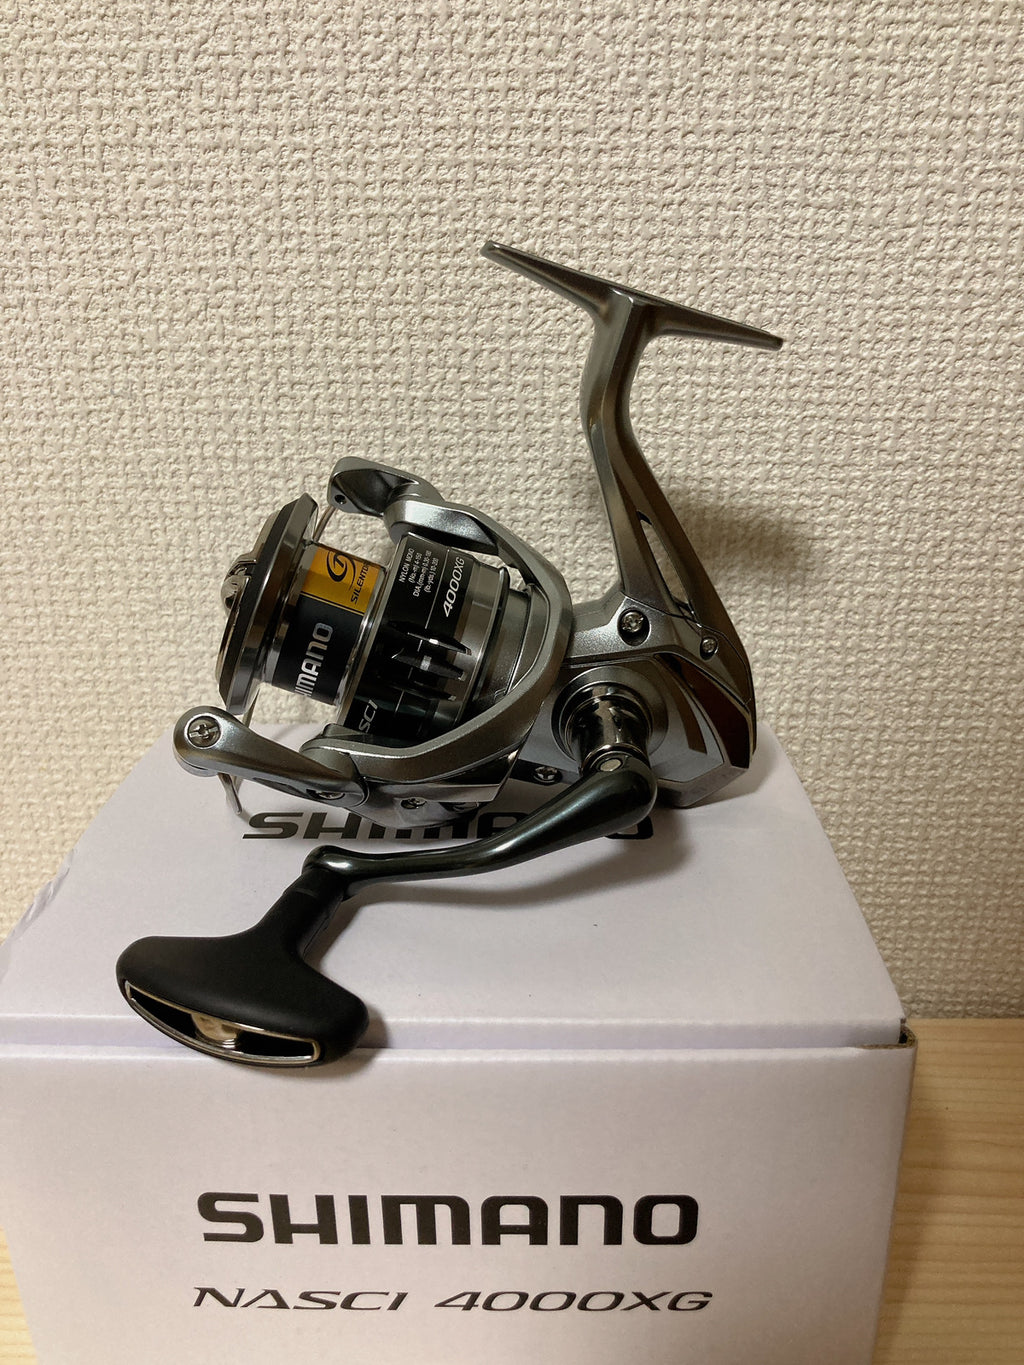 Shimano Spinning Reel 21 NASCI 4000XG Gear Ratio 6.2:1 Fishing